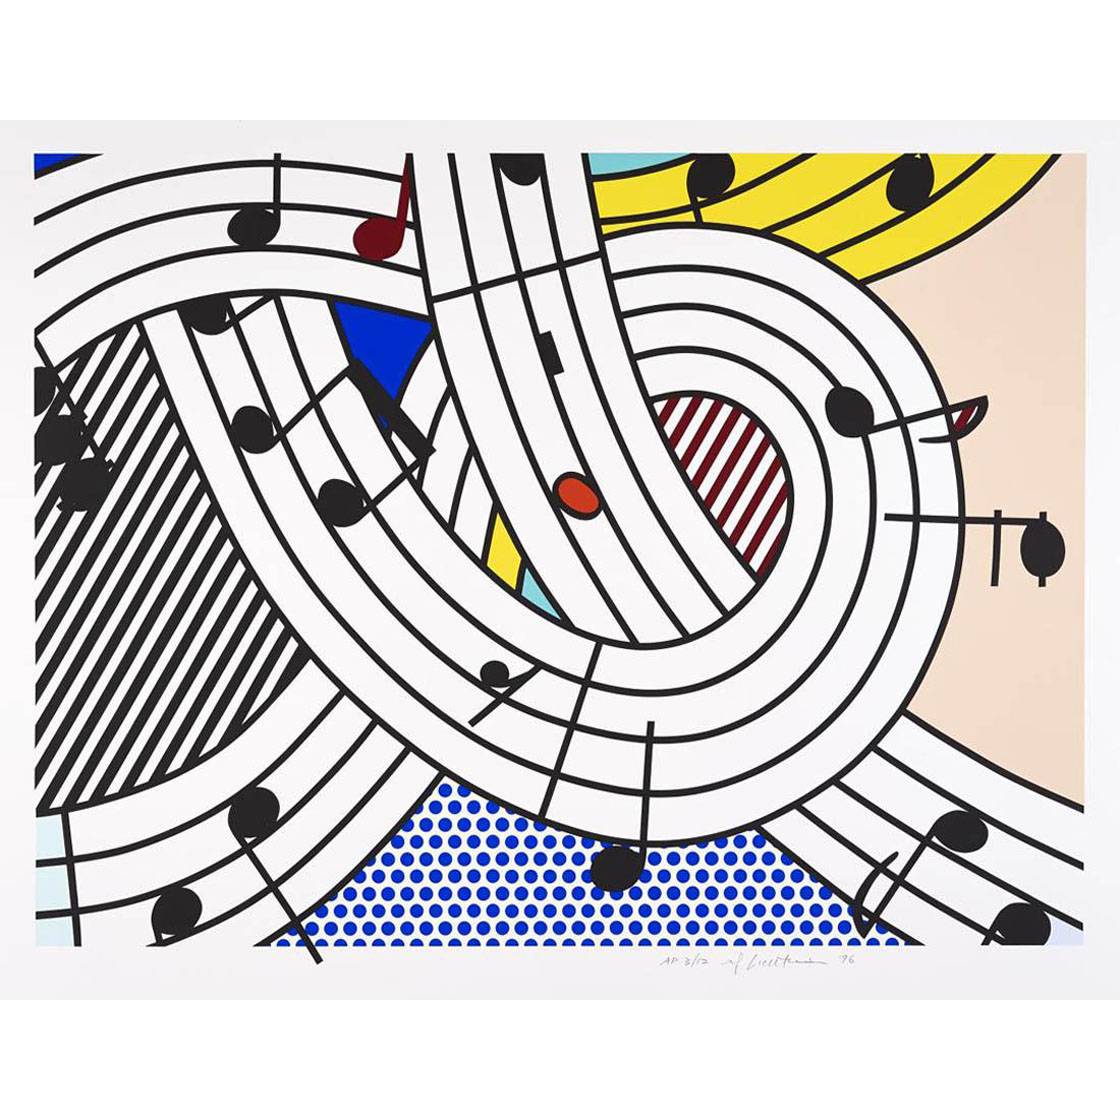 Roy Lichtenstein. Composition II. 1996. Tate Modern